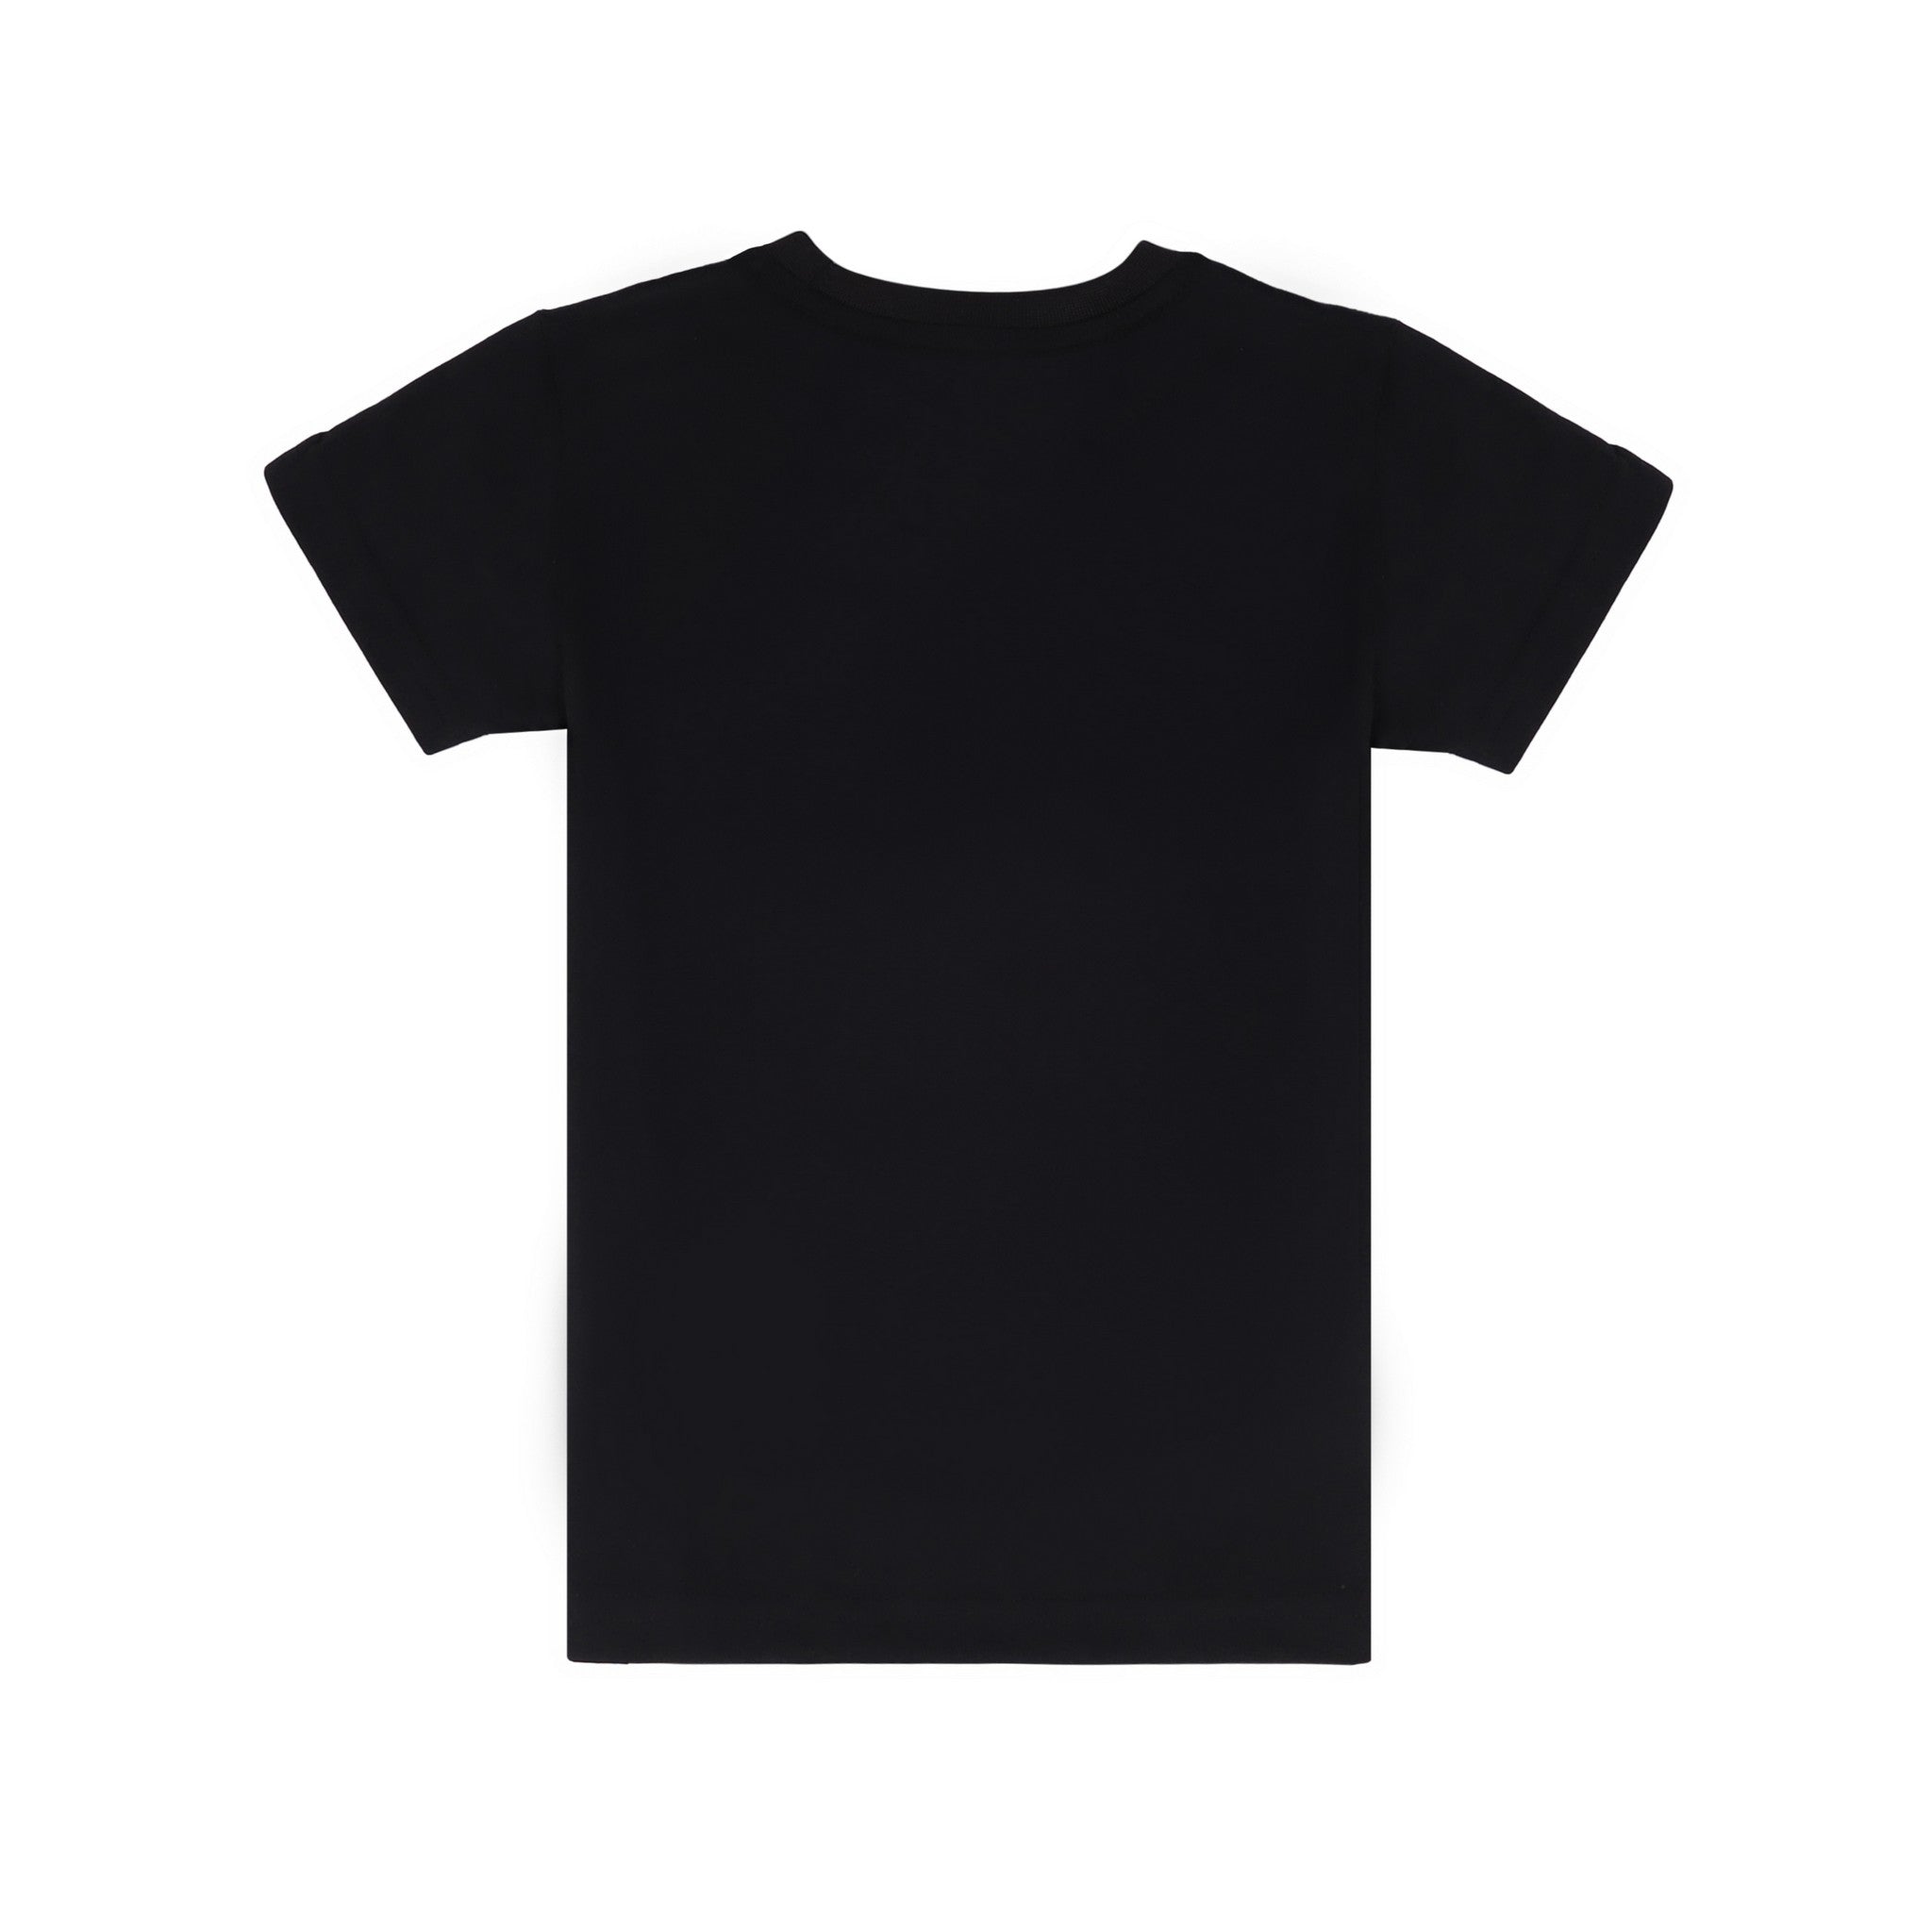 Paradise Print Black T-Shirt